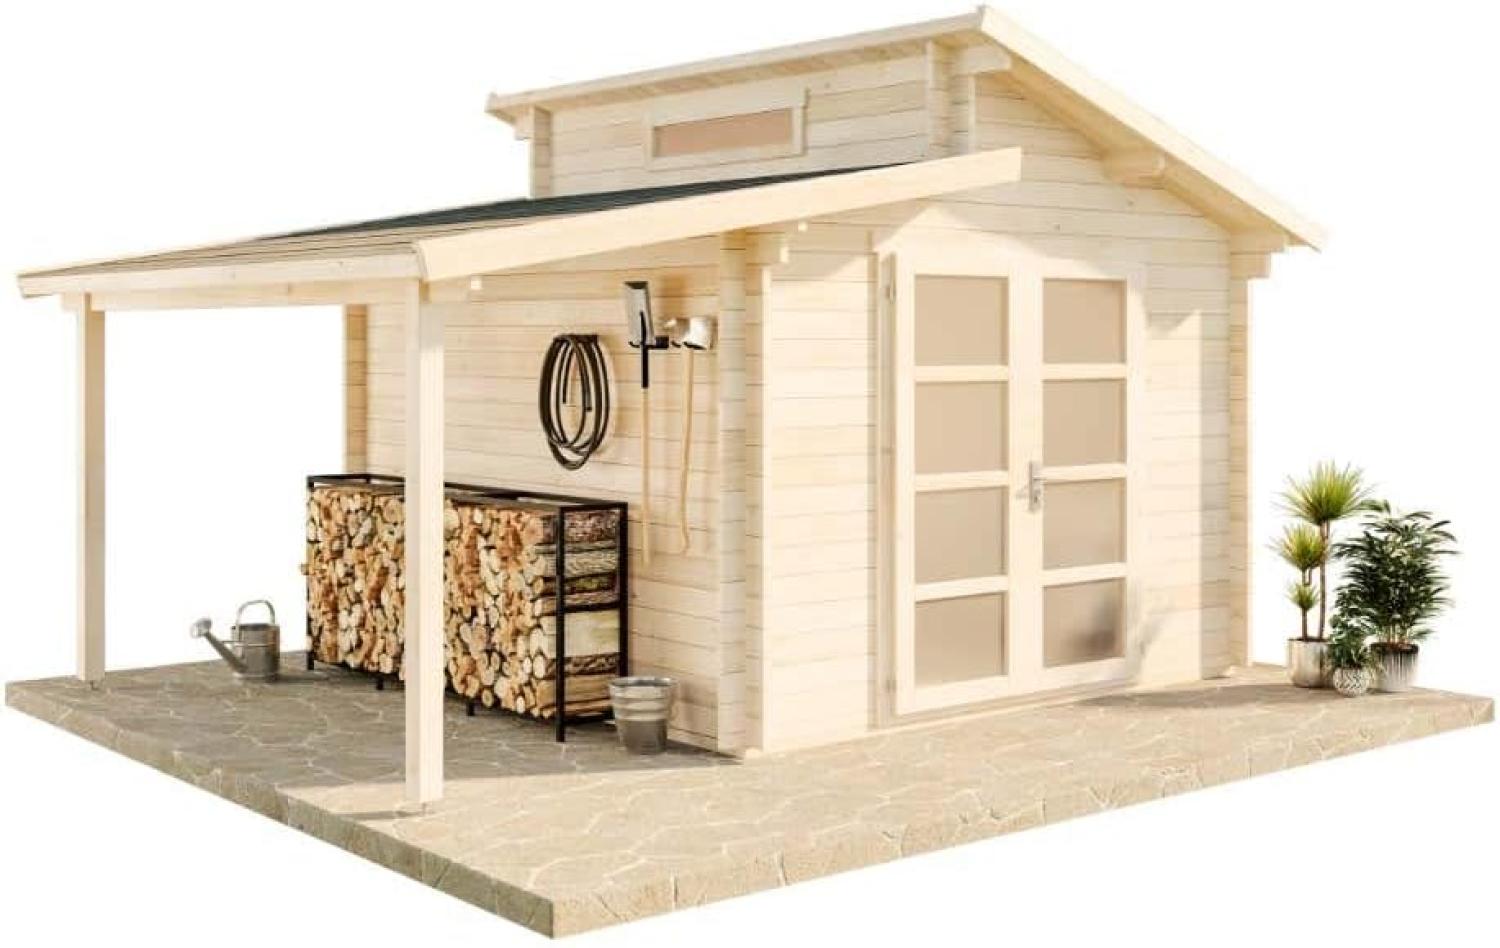 Alpholz Gartenhaus Aktiva mit Schleppdach Gartenhaus aus Holz Holzhaus mit 40 mm Wandstärke inklusive Schleppdach Blockbohlenhaus mit Montagematerial Bild 1